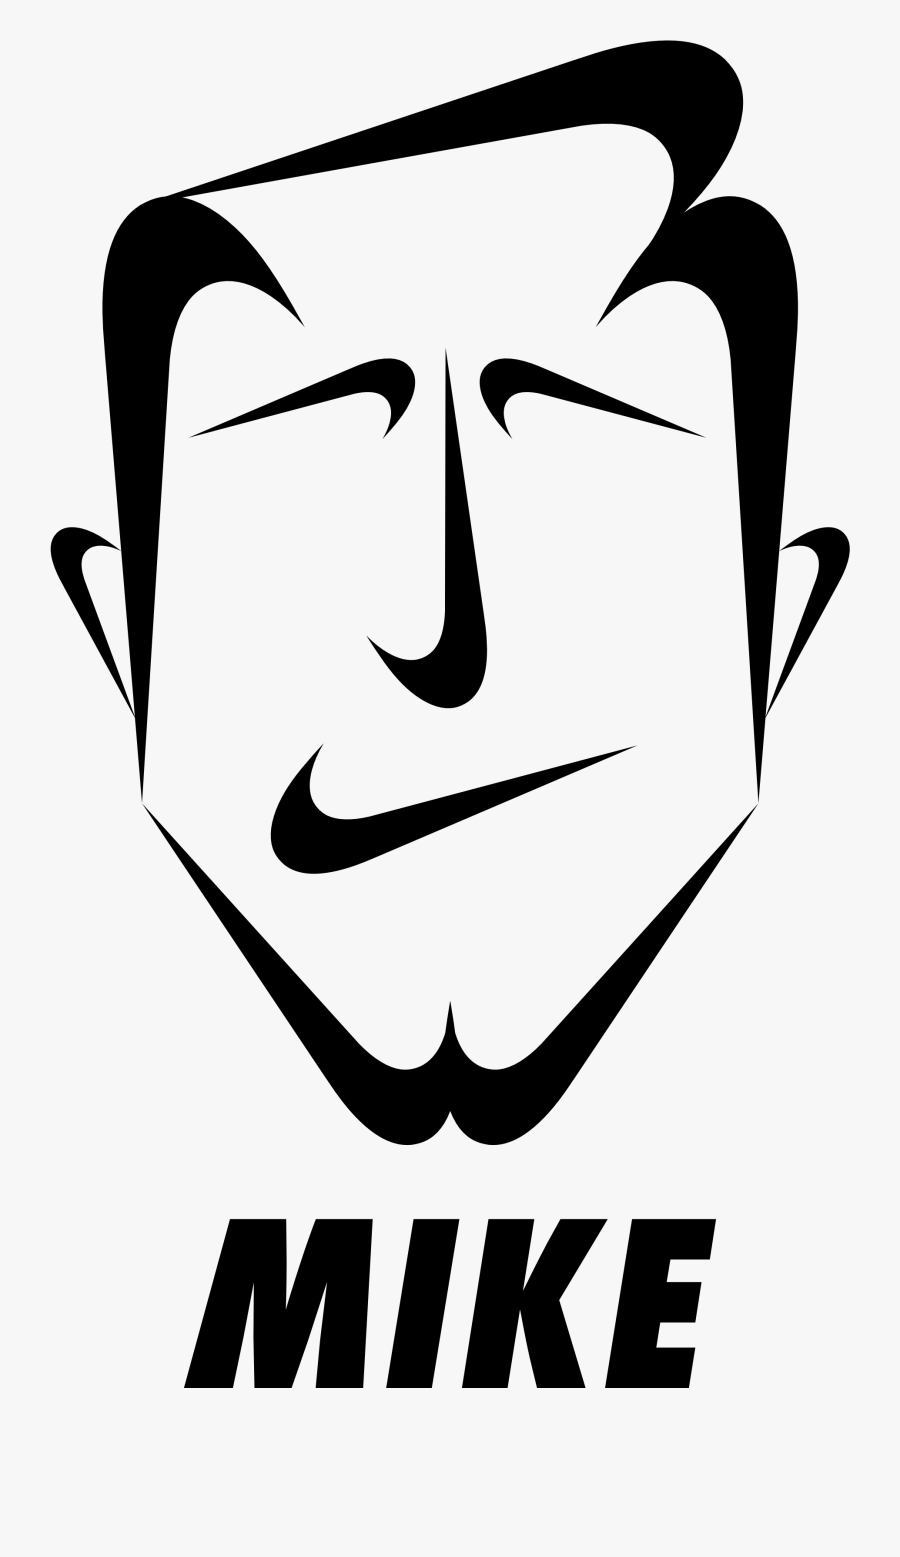 Made Up Nike Logo, Transparent Clipart